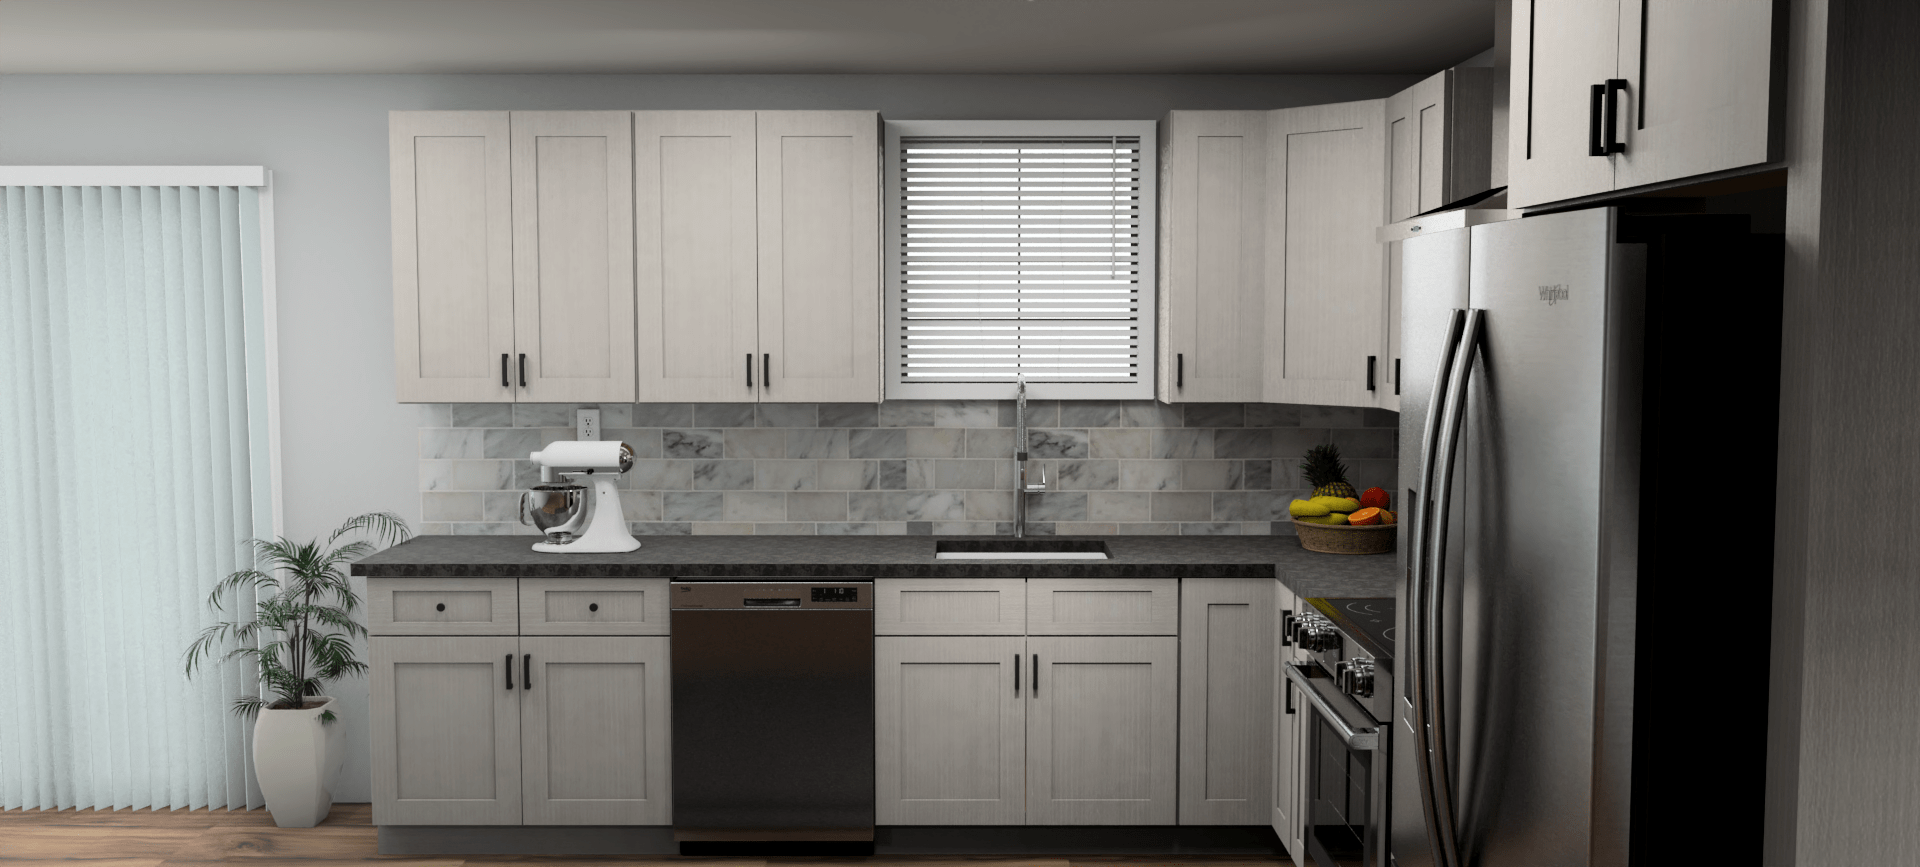 Fabuwood Allure Galaxy Horizon 11 x 12 L Shaped Kitchen Side Layout Photo